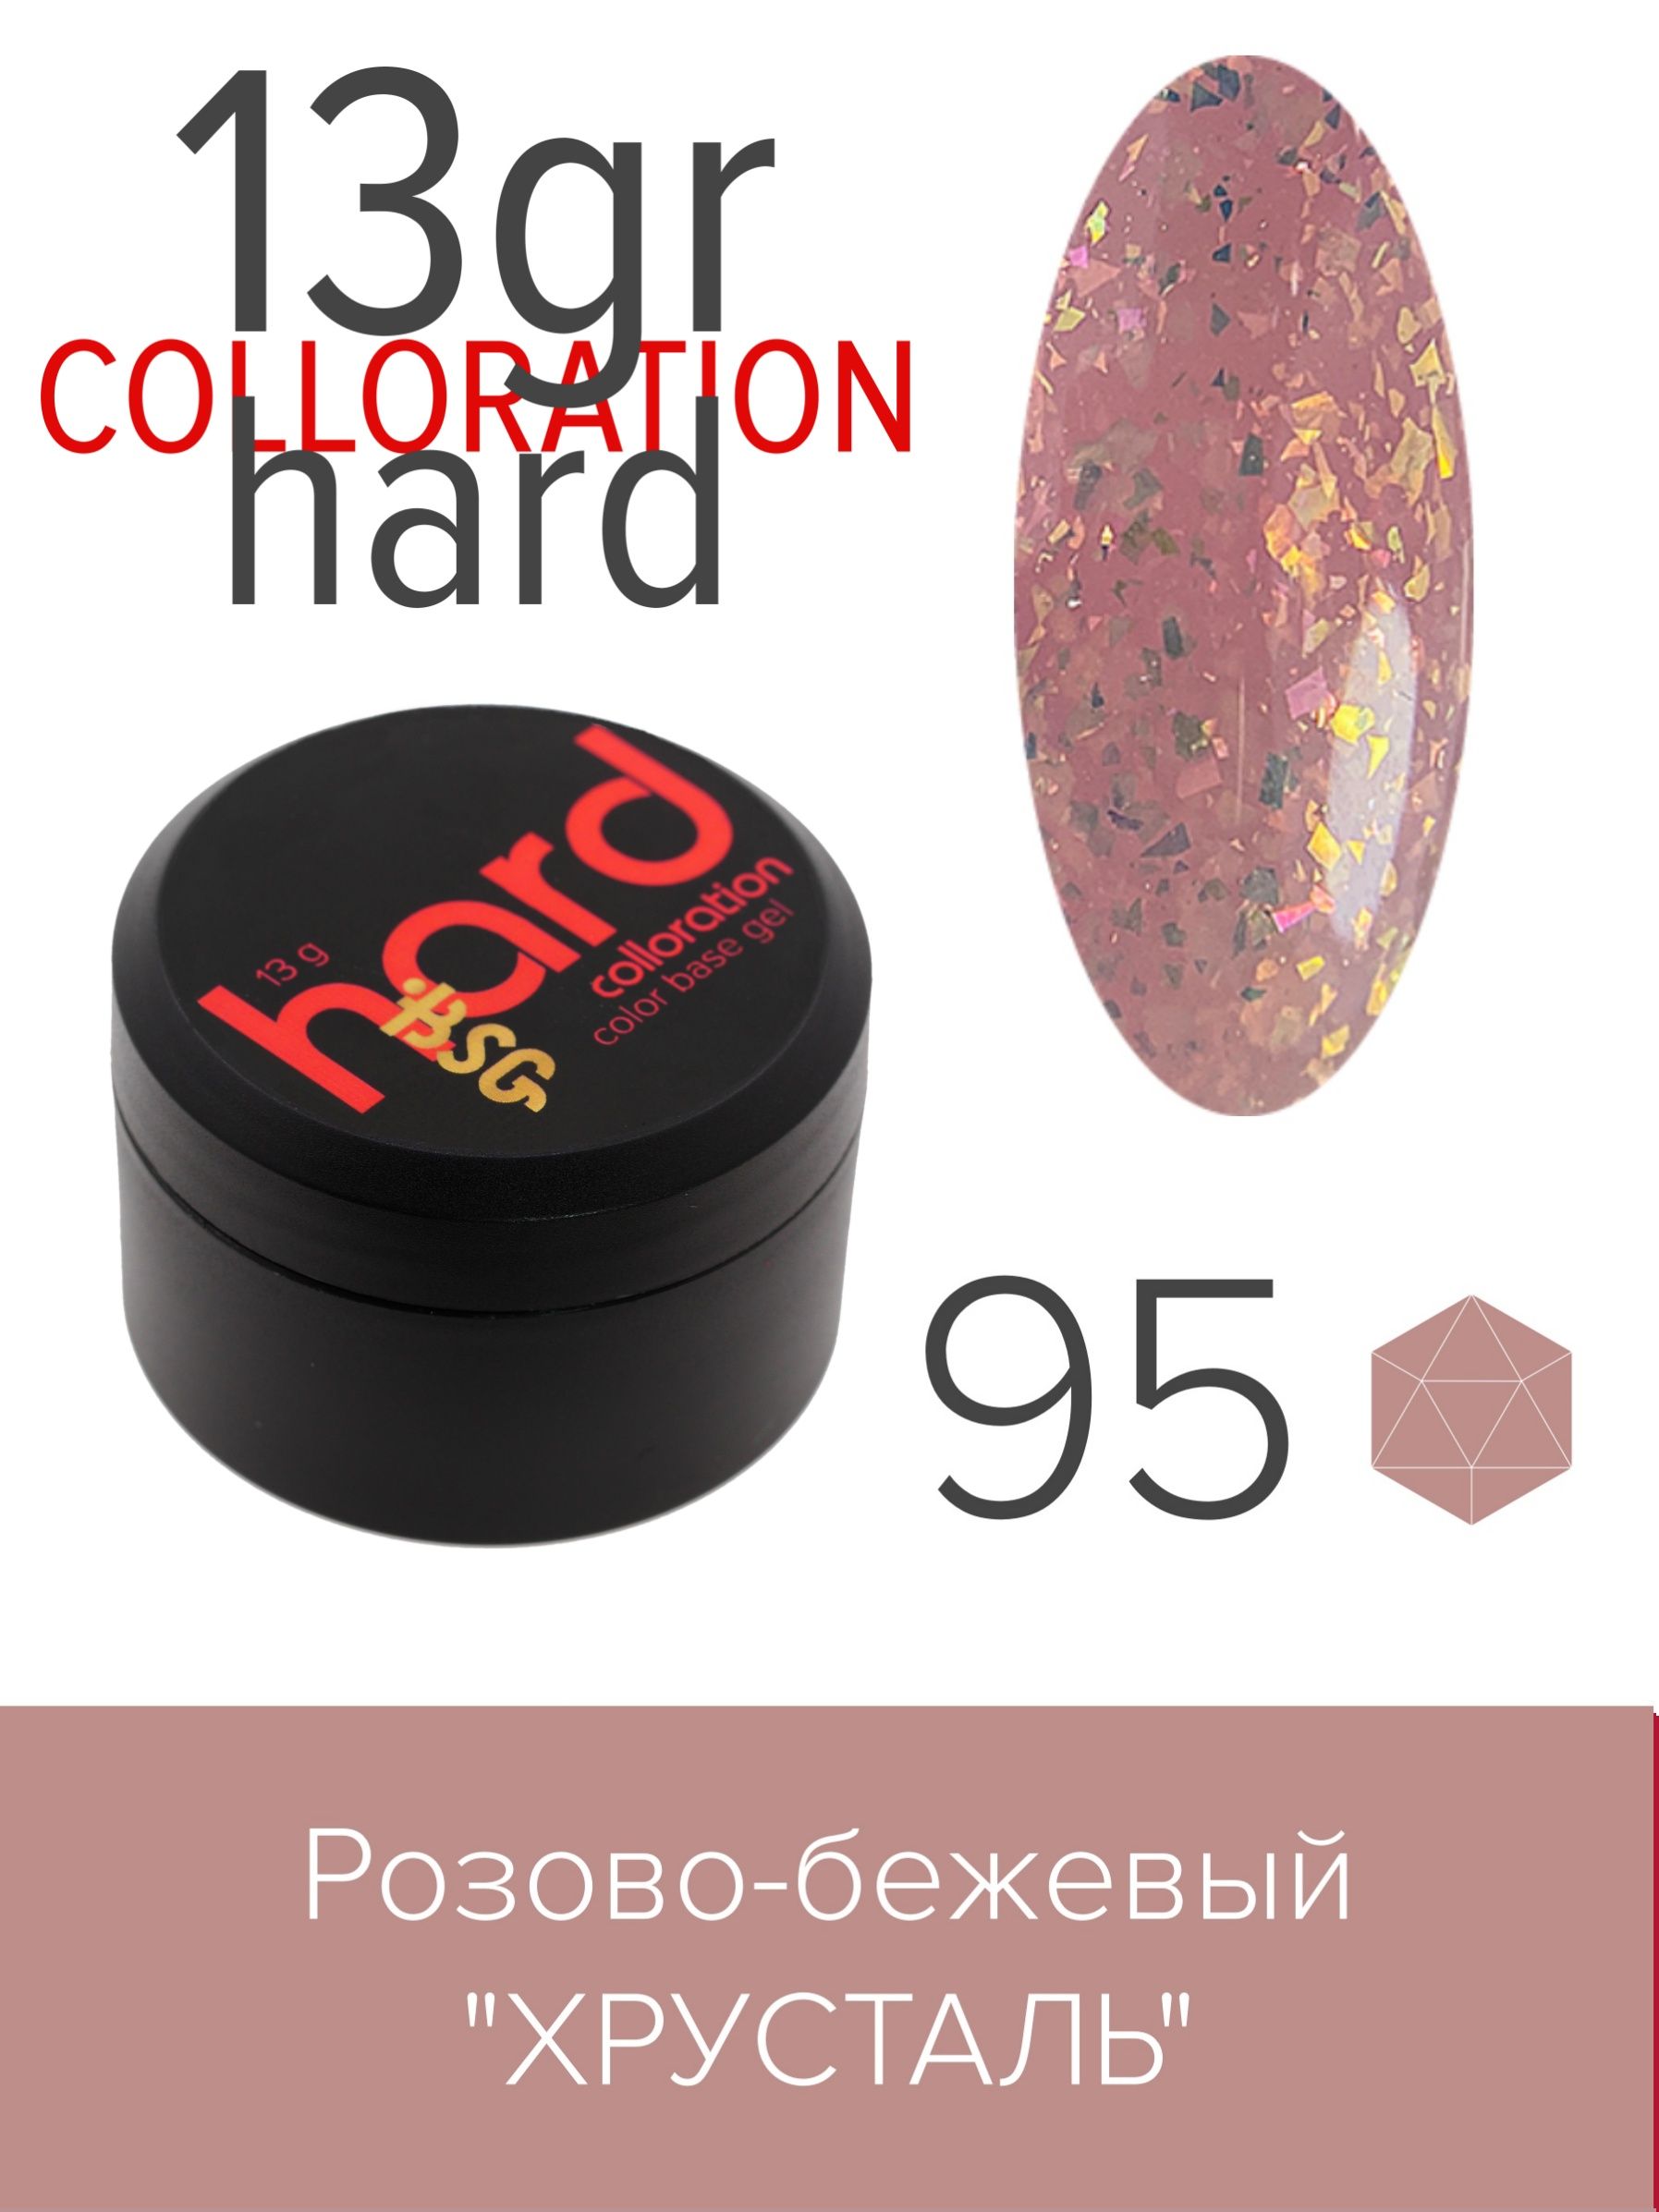 База BSG Colloration Hard цветная жесткая №95 узоры для вязания крючком красивые мотивы и техника моделирования для дизайна стильных вязаных вещей